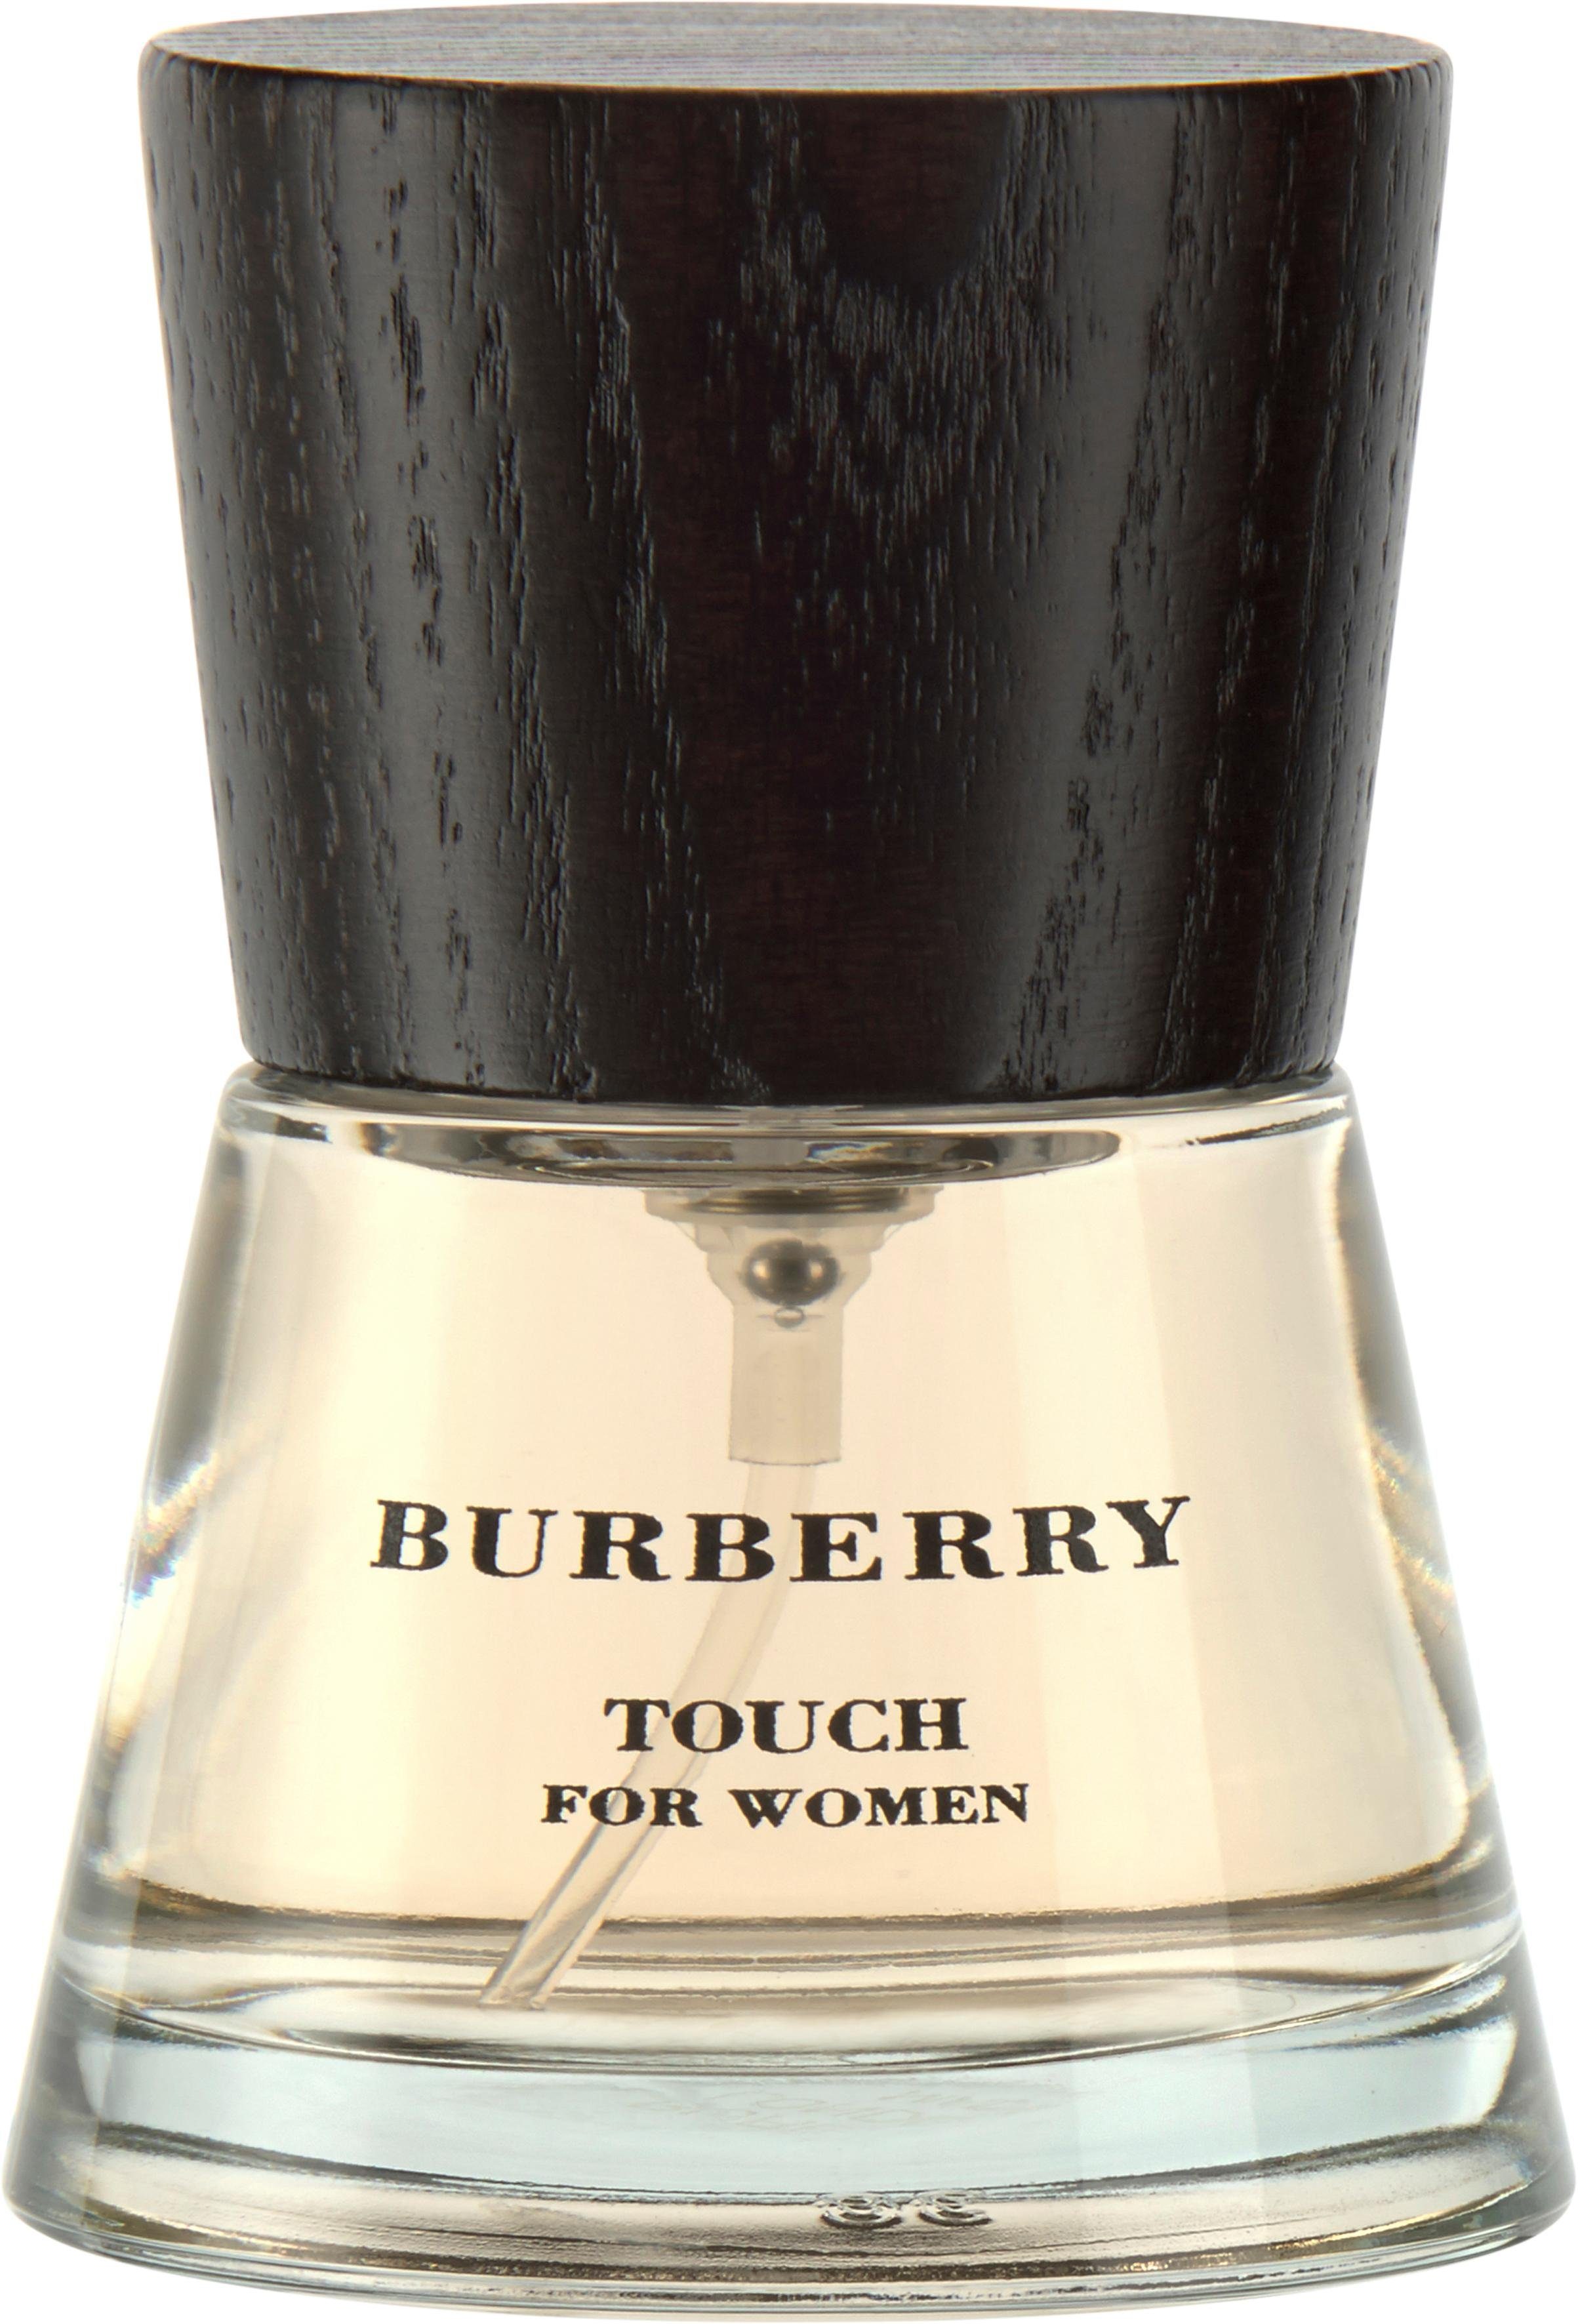 BURBERRY Eau de Parfum »Touch for Women« kaufen | OTTO